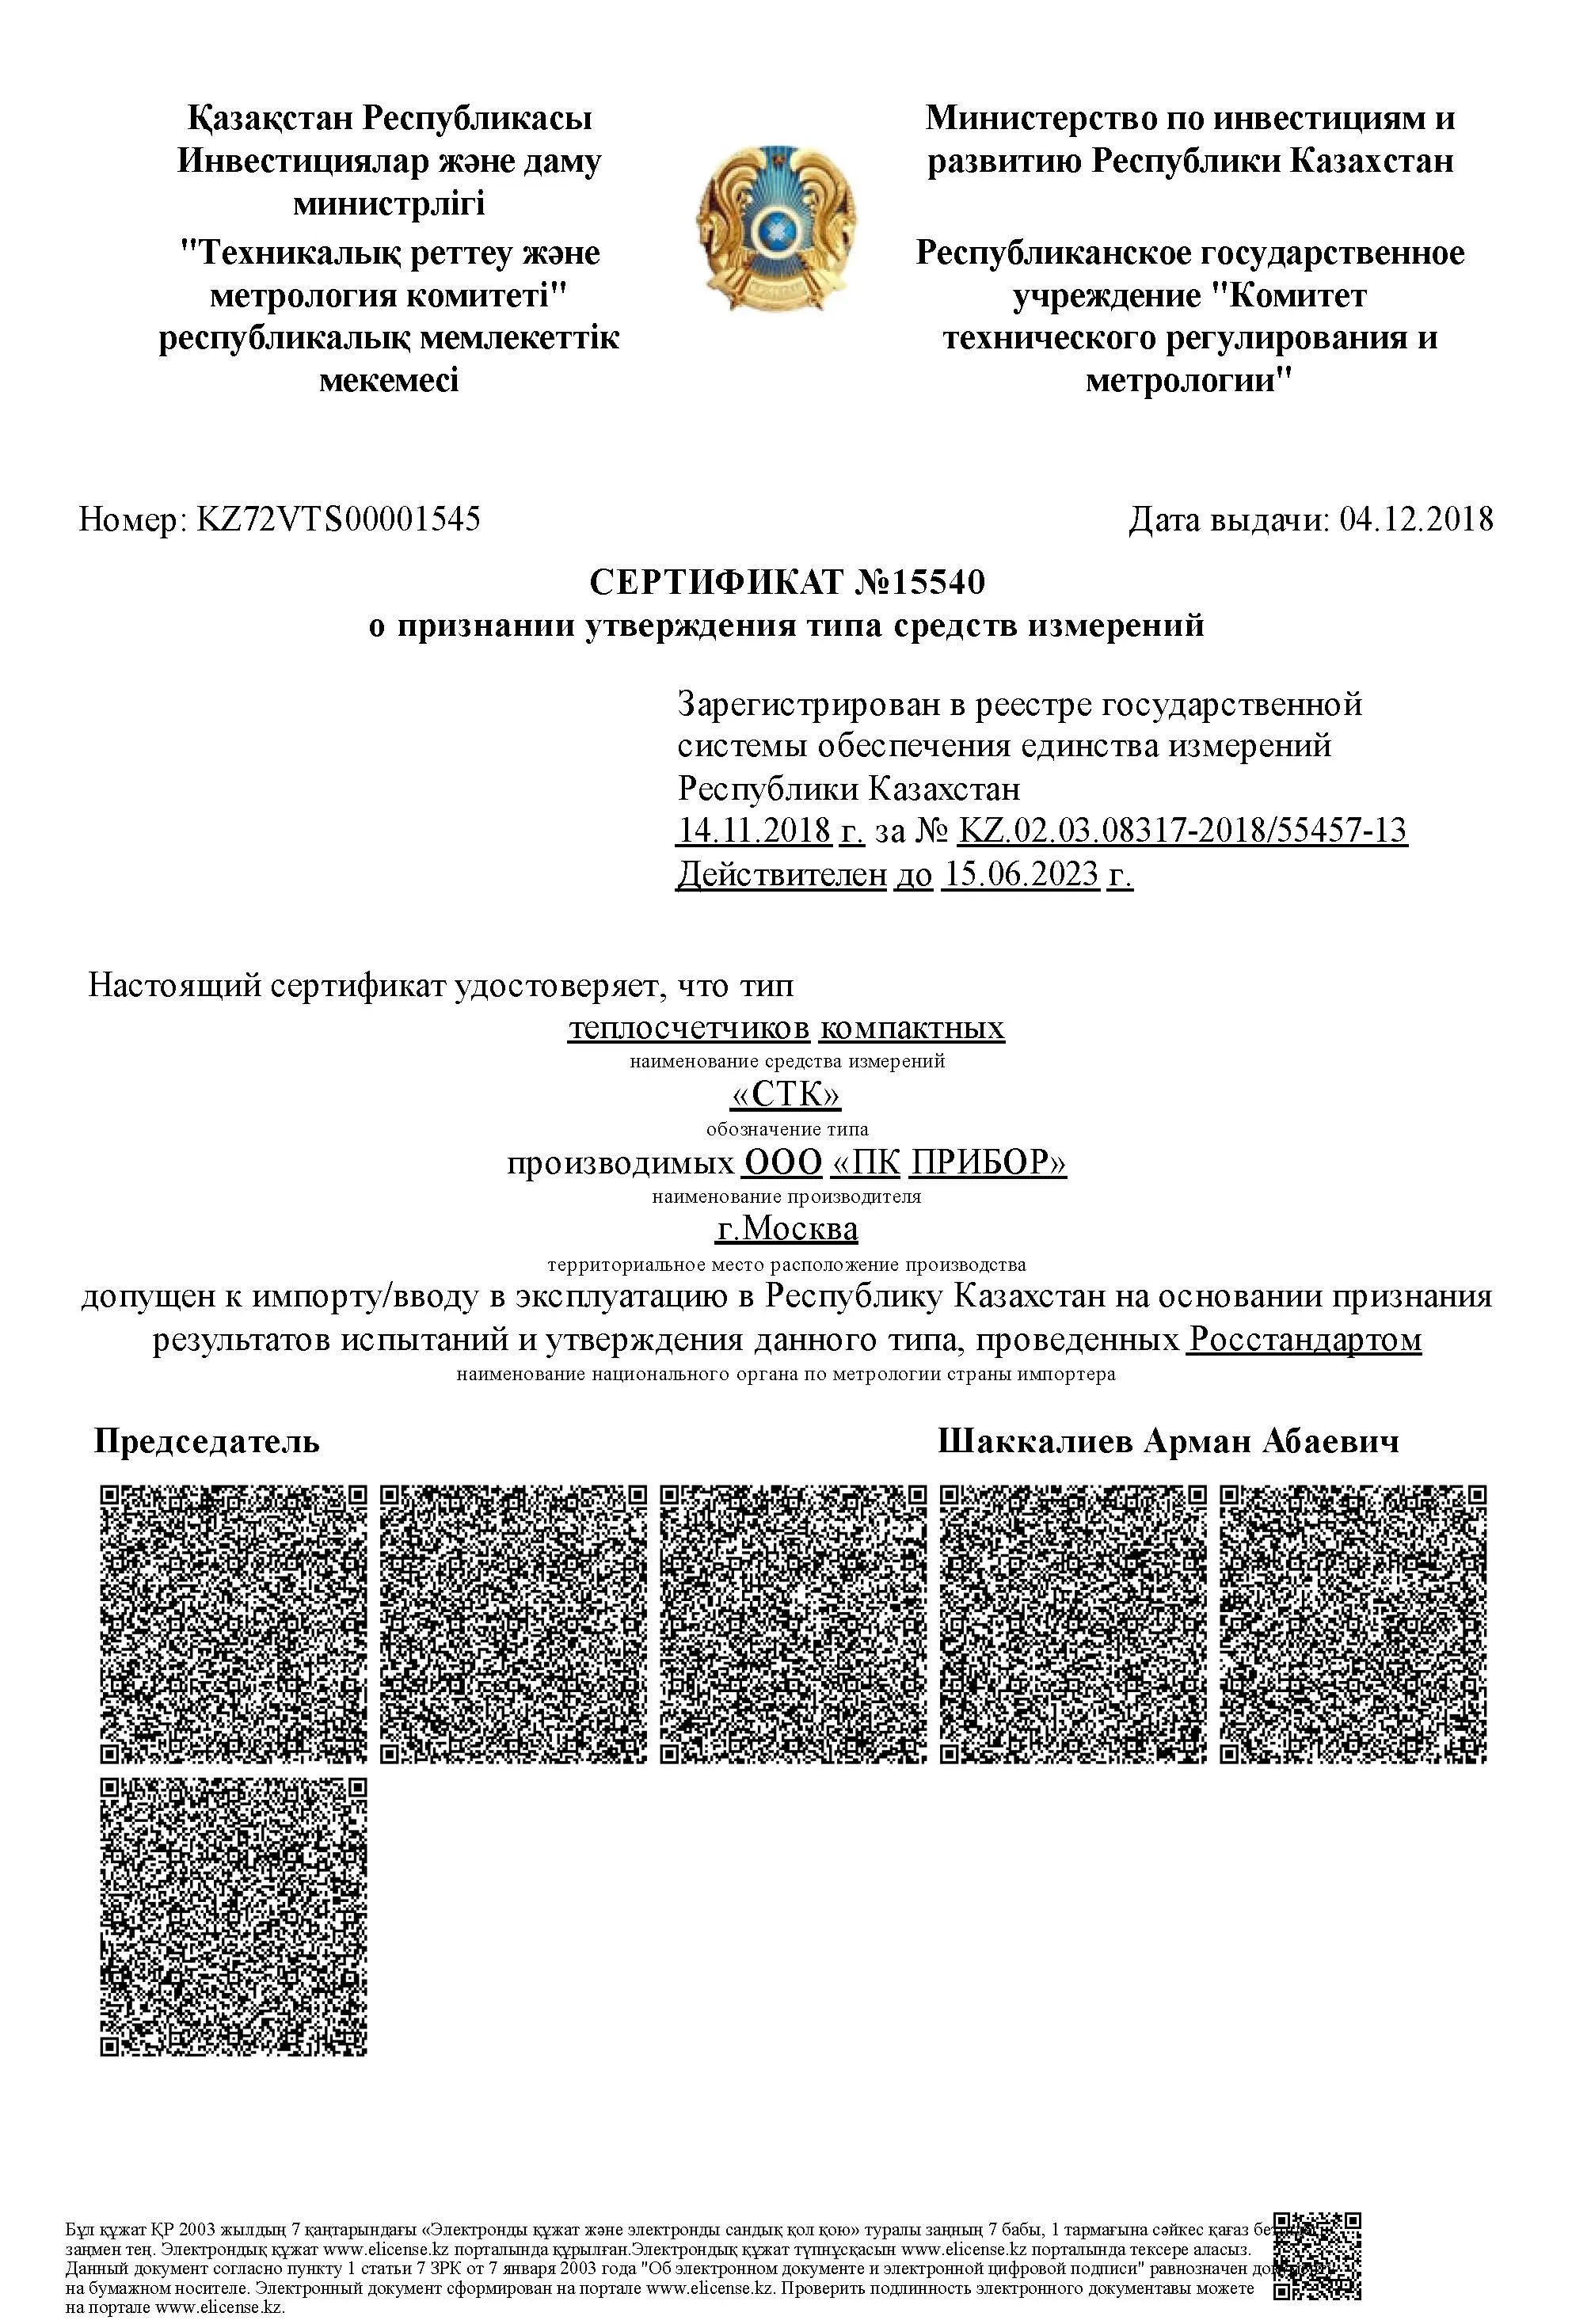 Сертификат о признании утверждения типа теплосчётчика СТК, Казахстан, до 15.06.2023